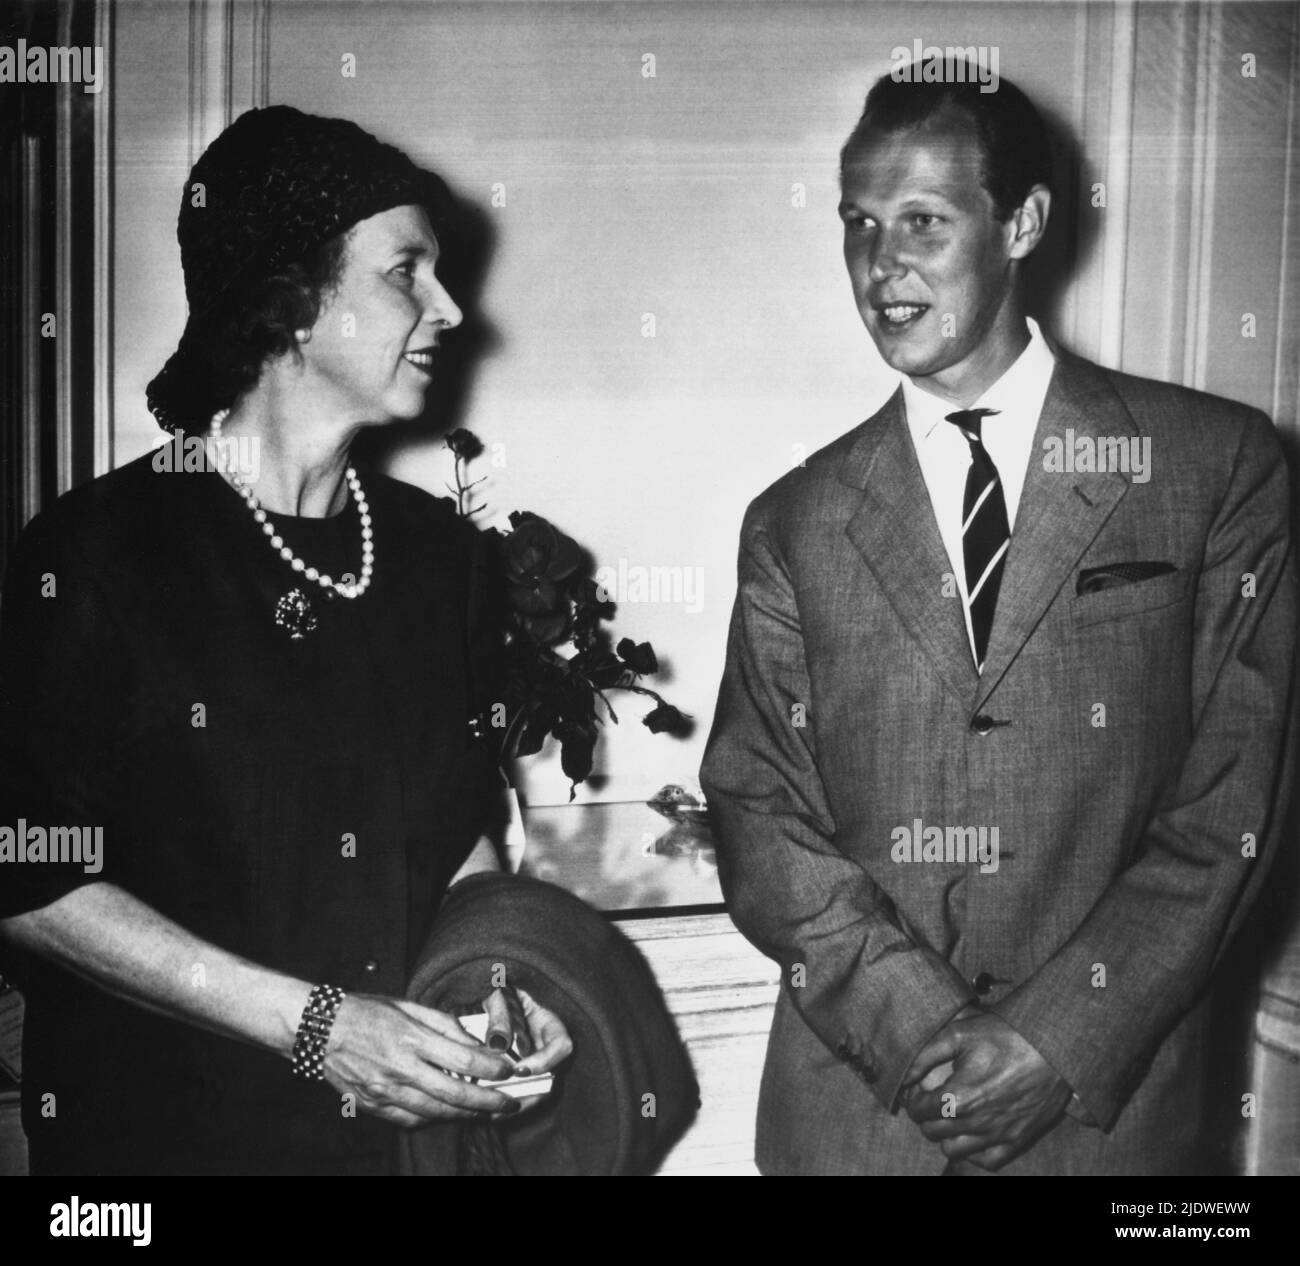 1964., 12. Mai, London, GROSSBRITANNIEN: Die belgische Prinzessin Marie José von BELGIEN (1906 - 2001), letzte Königin von Italien, heiratete 1930 mit dem italienischen König UMBERTO II. Di SAVOIA (1904 - 1983). Auf diesem Foto mit dem Sohn VITTORIO EMANUELE ( geboren ,1937 in Neapel ) im Savoy Hotel . Er hatte gerade fließen in aus Nizza (Frankreich) zu besuchen, seinen Vater Umberto, vor kurzem operiert an der London Clinic. - TELEFOTO - TELEFOTO - Haus BRABANT - BRABANTE - Royalty - nobili italiani - nobiltà - principessa reale - ITALIA - BELGIO - Maria José - ritratto - Berühmtheit der Persönlichkeit Stockfoto